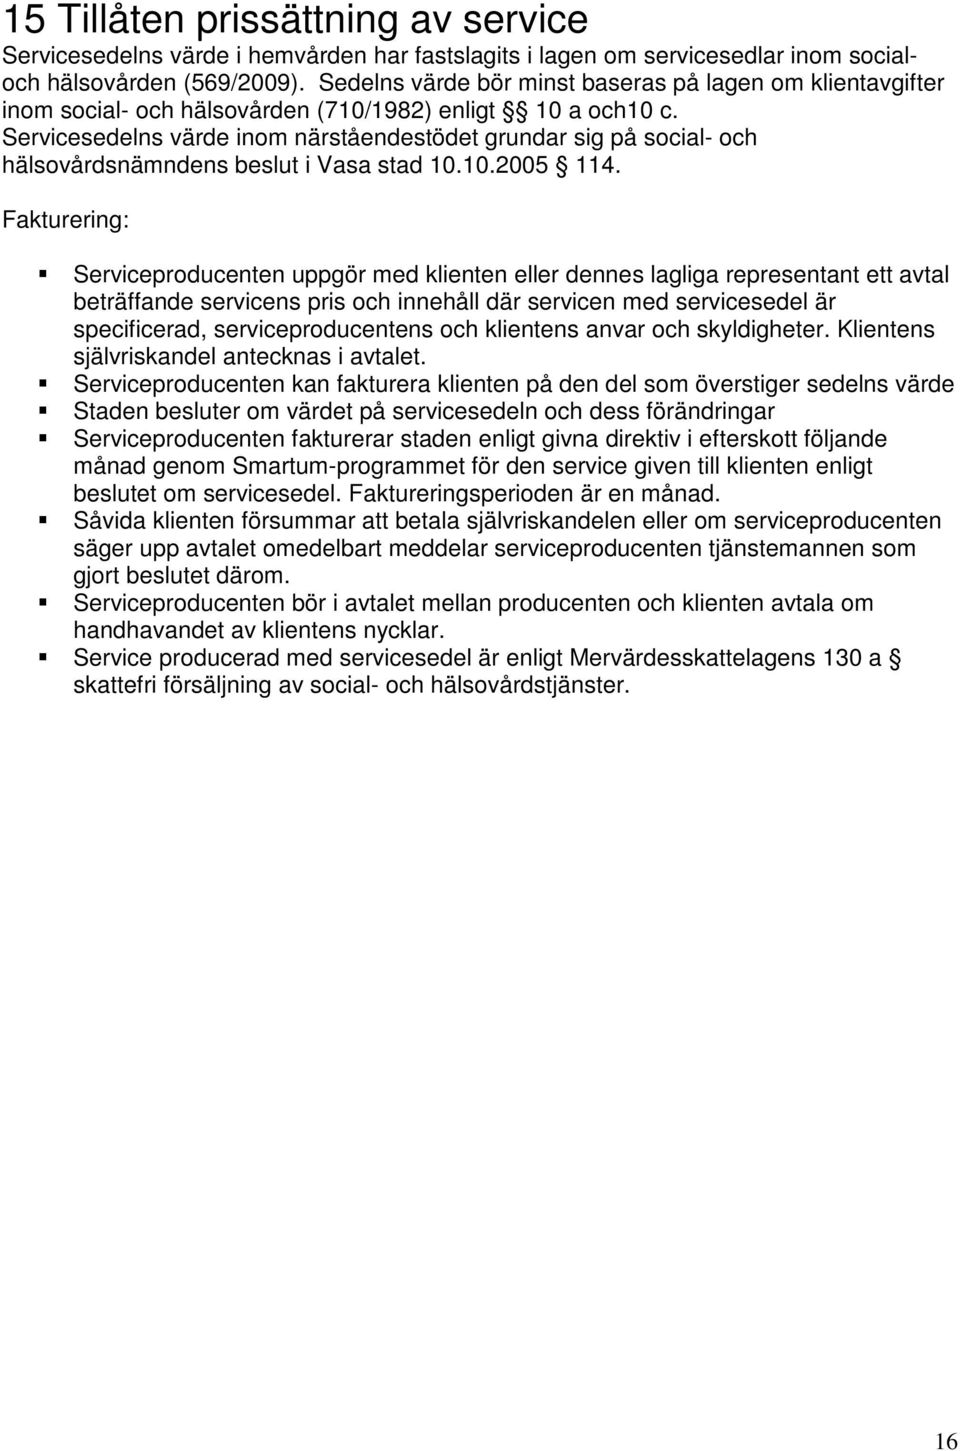 Servicesedelns värde inom närståendestödet grundar sig på social- och hälsovårdsnämndens beslut i Vasa stad 10.10.2005 114.